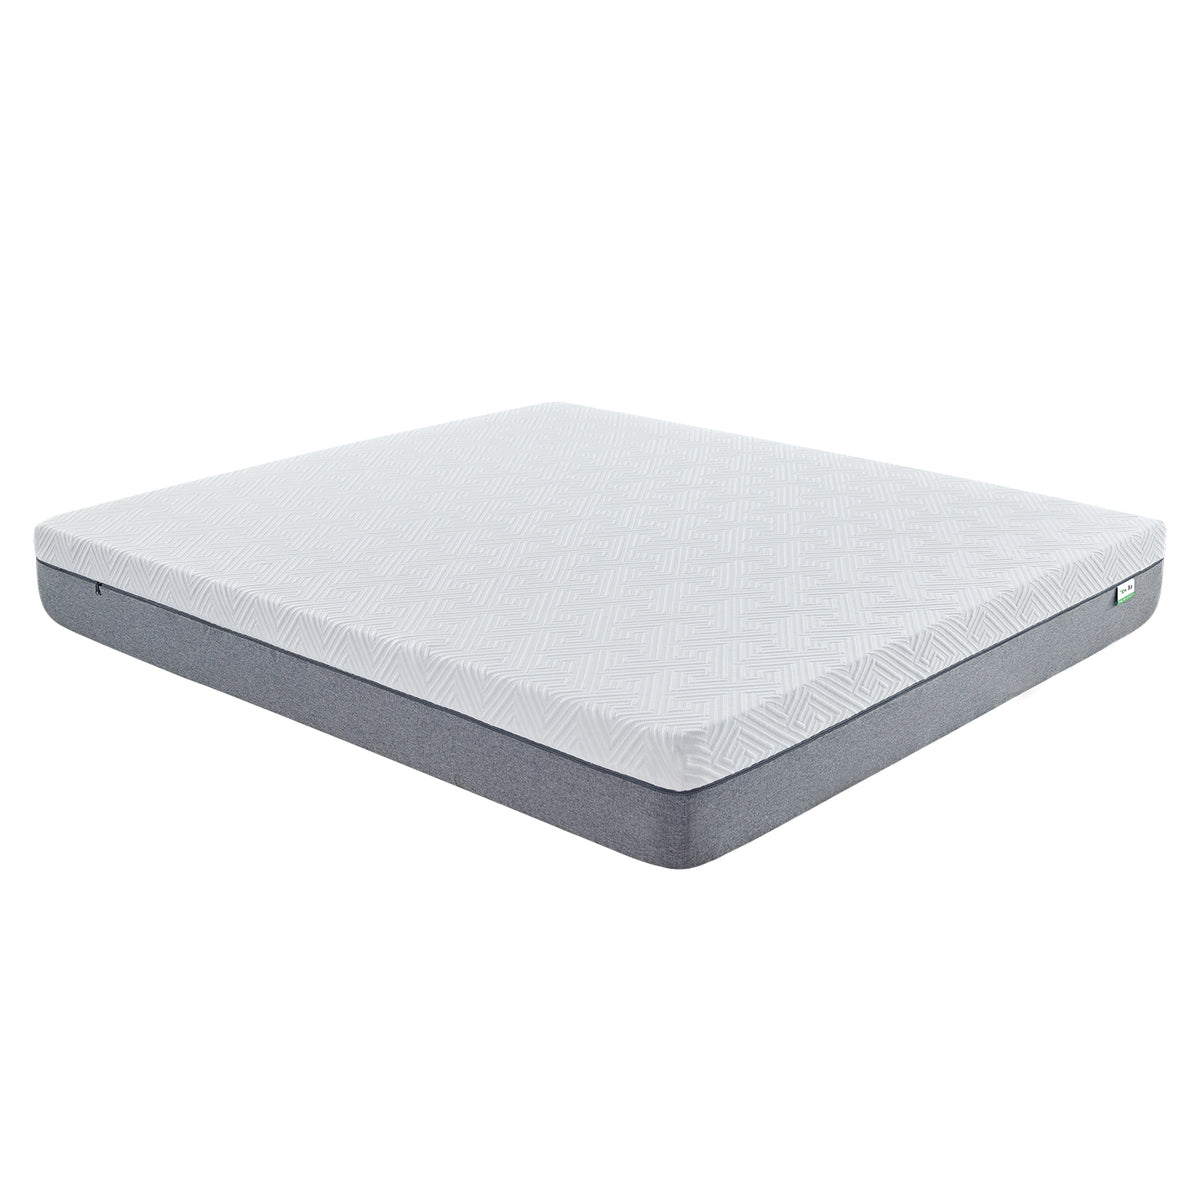 Novilla 10 inch Gel Memory Foam Mattress for Cool Sleep & Pressure Relief, Medium Firm Bed Mattress, Bliss